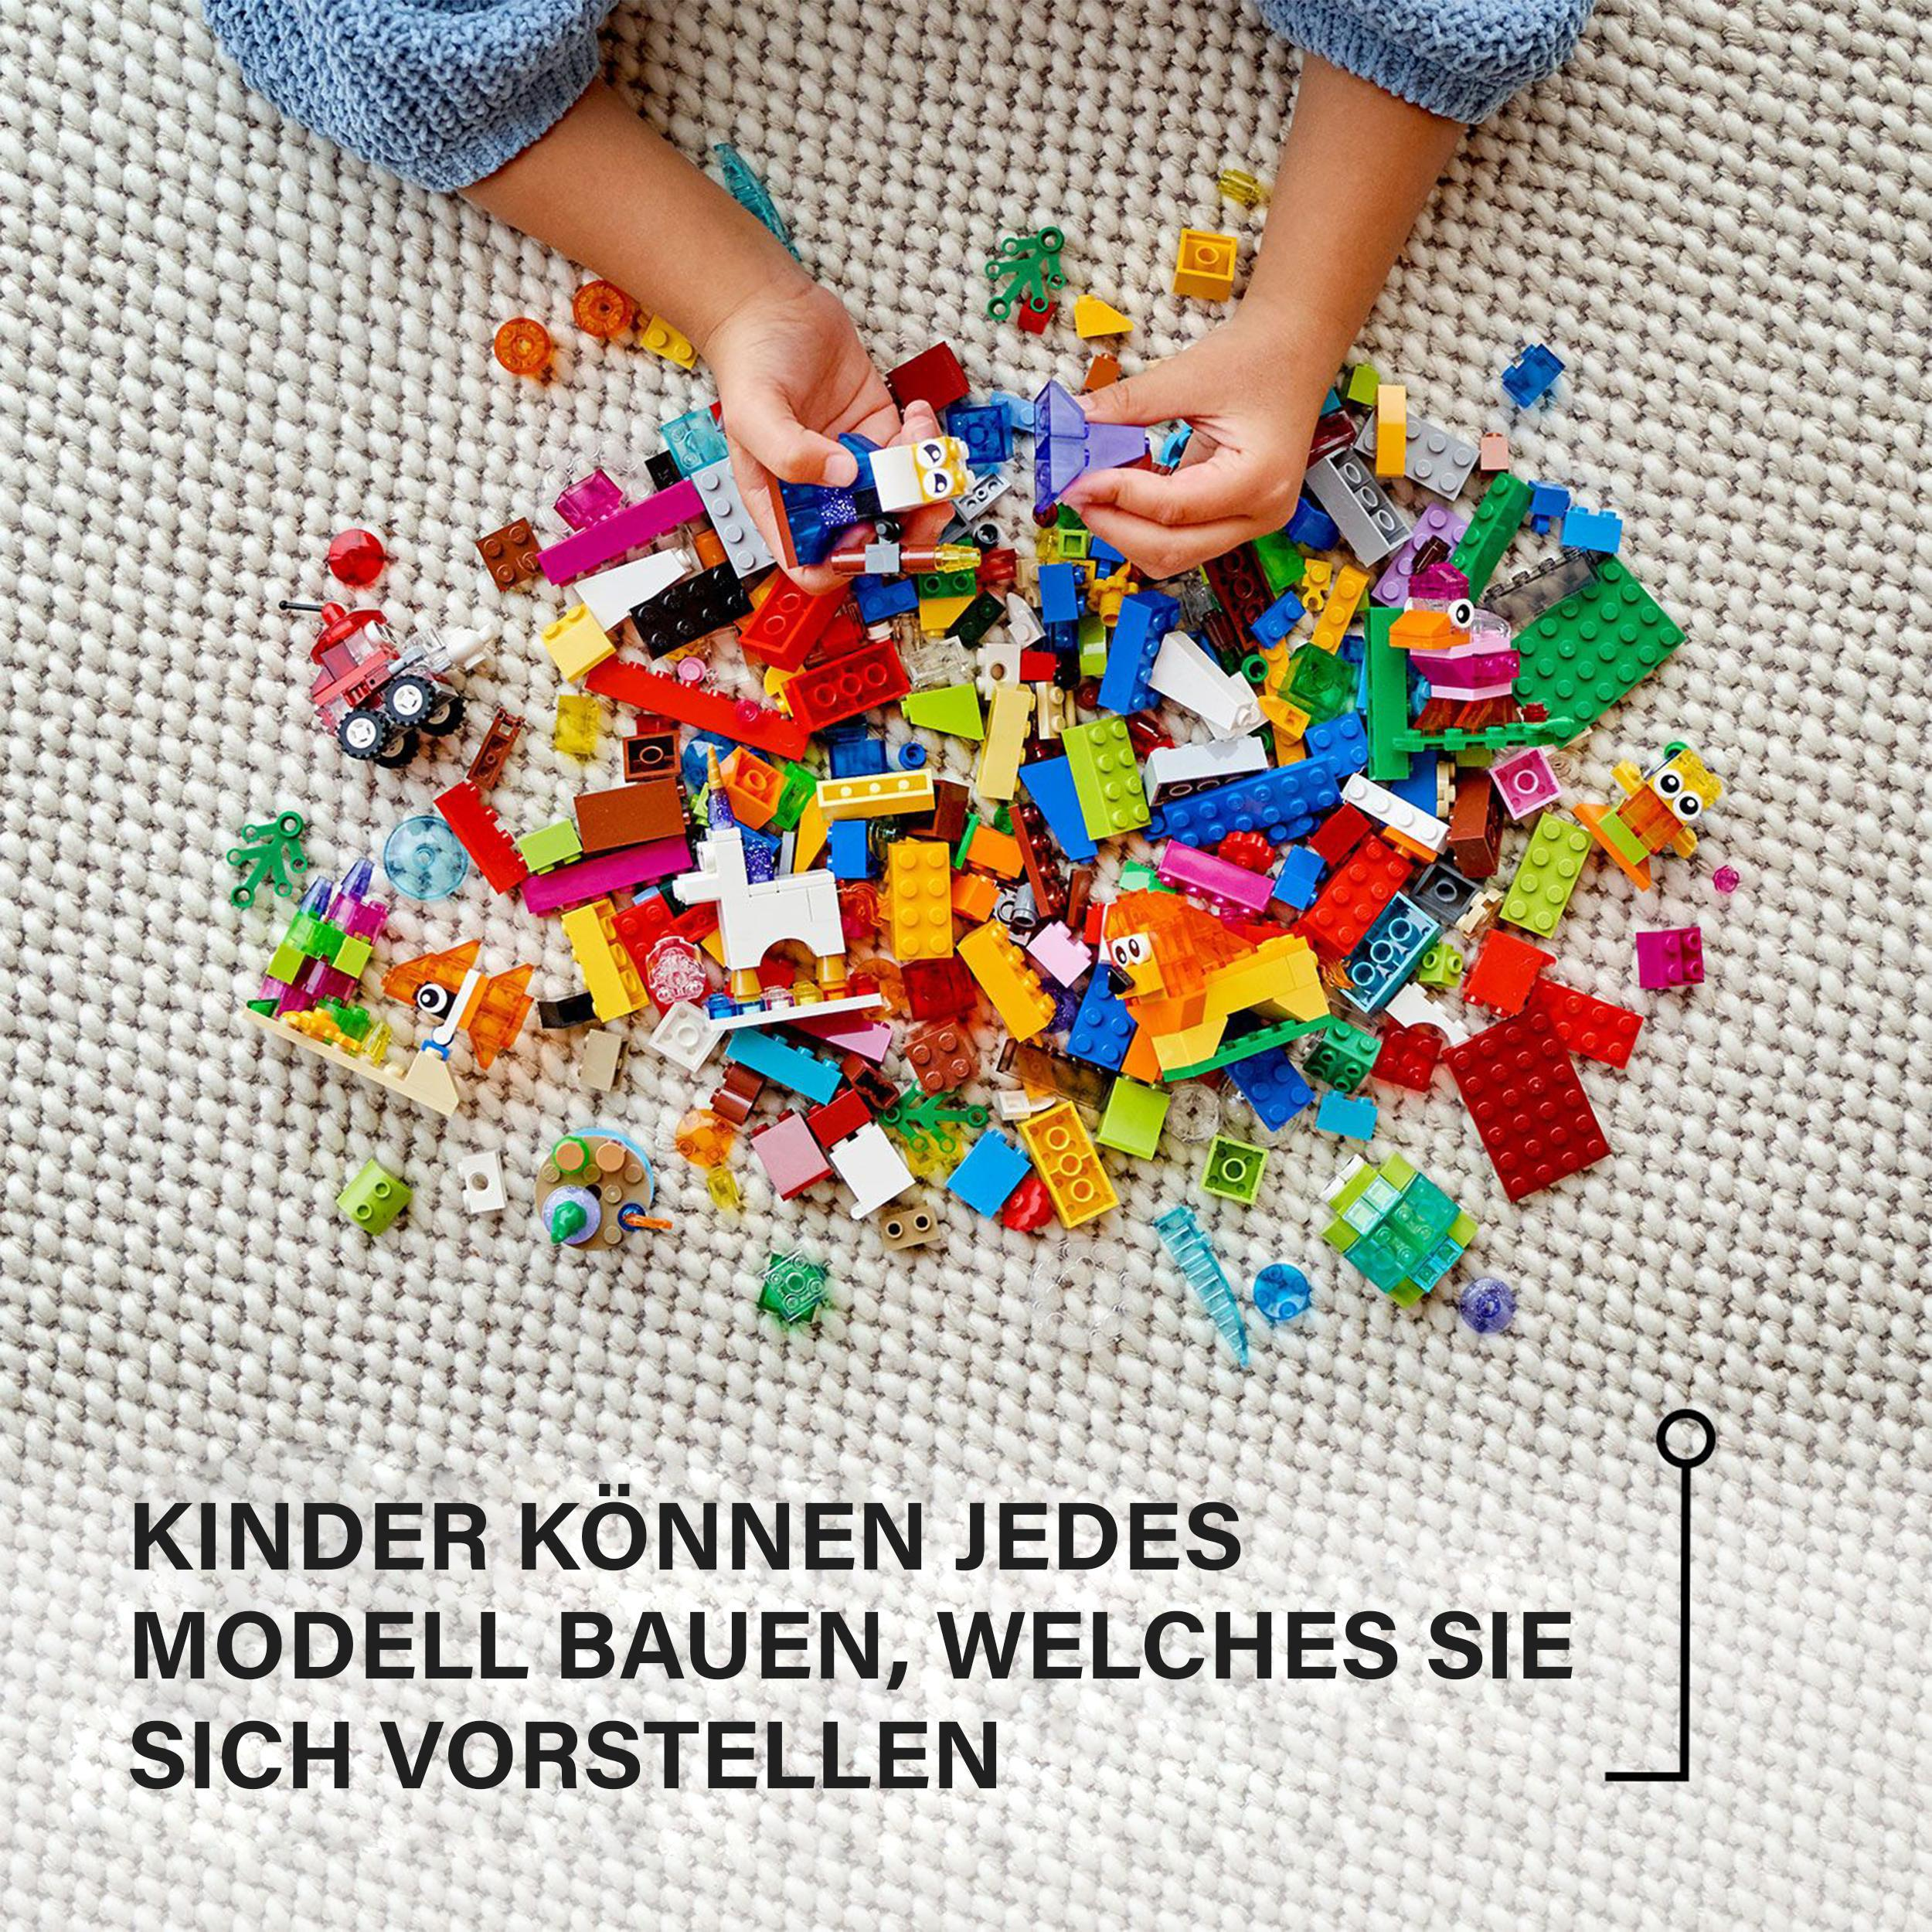 Bausatz, 11013 Mehrfarbig LEGO durchsichtigen Kreativ-Bauset mit Steinen Classic